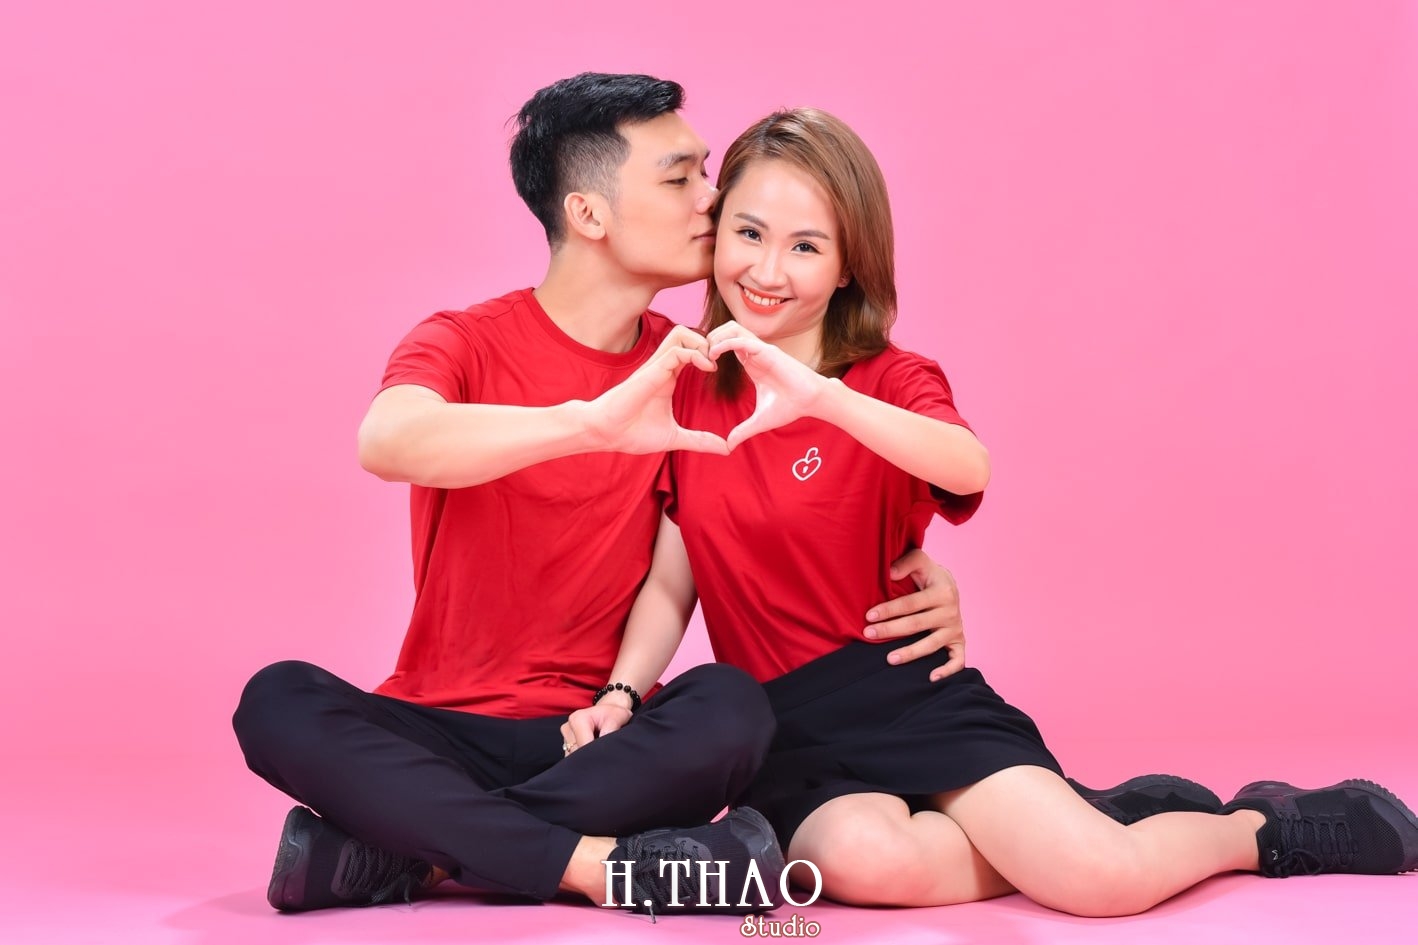 Anh couple 18 min - 3 concept chụp ảnh với người yêu đẹp mà chất - HThao Studio